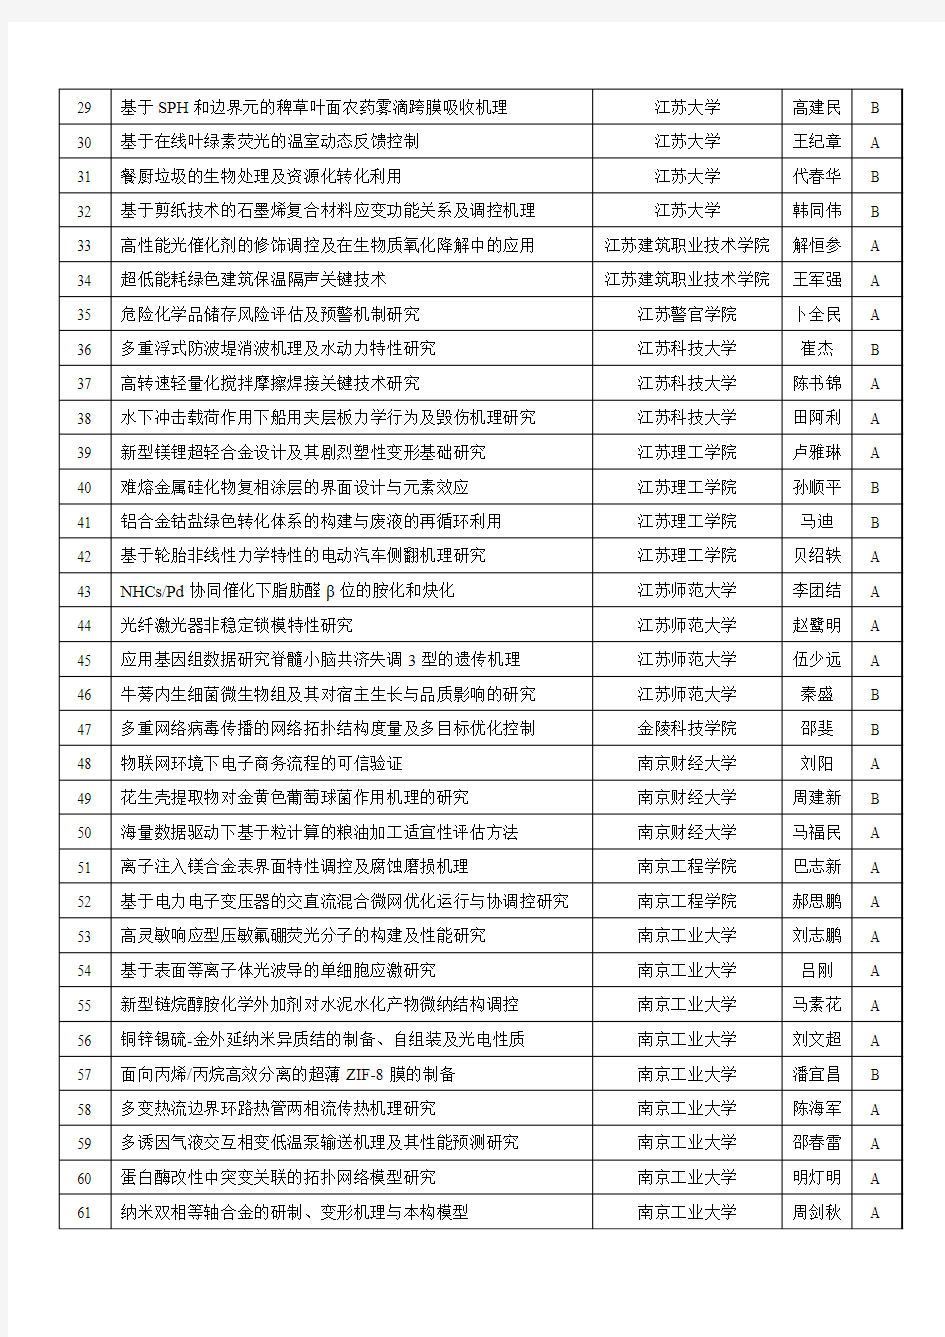 2017年度拟立项的江苏省高等学校自然科学研究重大项目名单